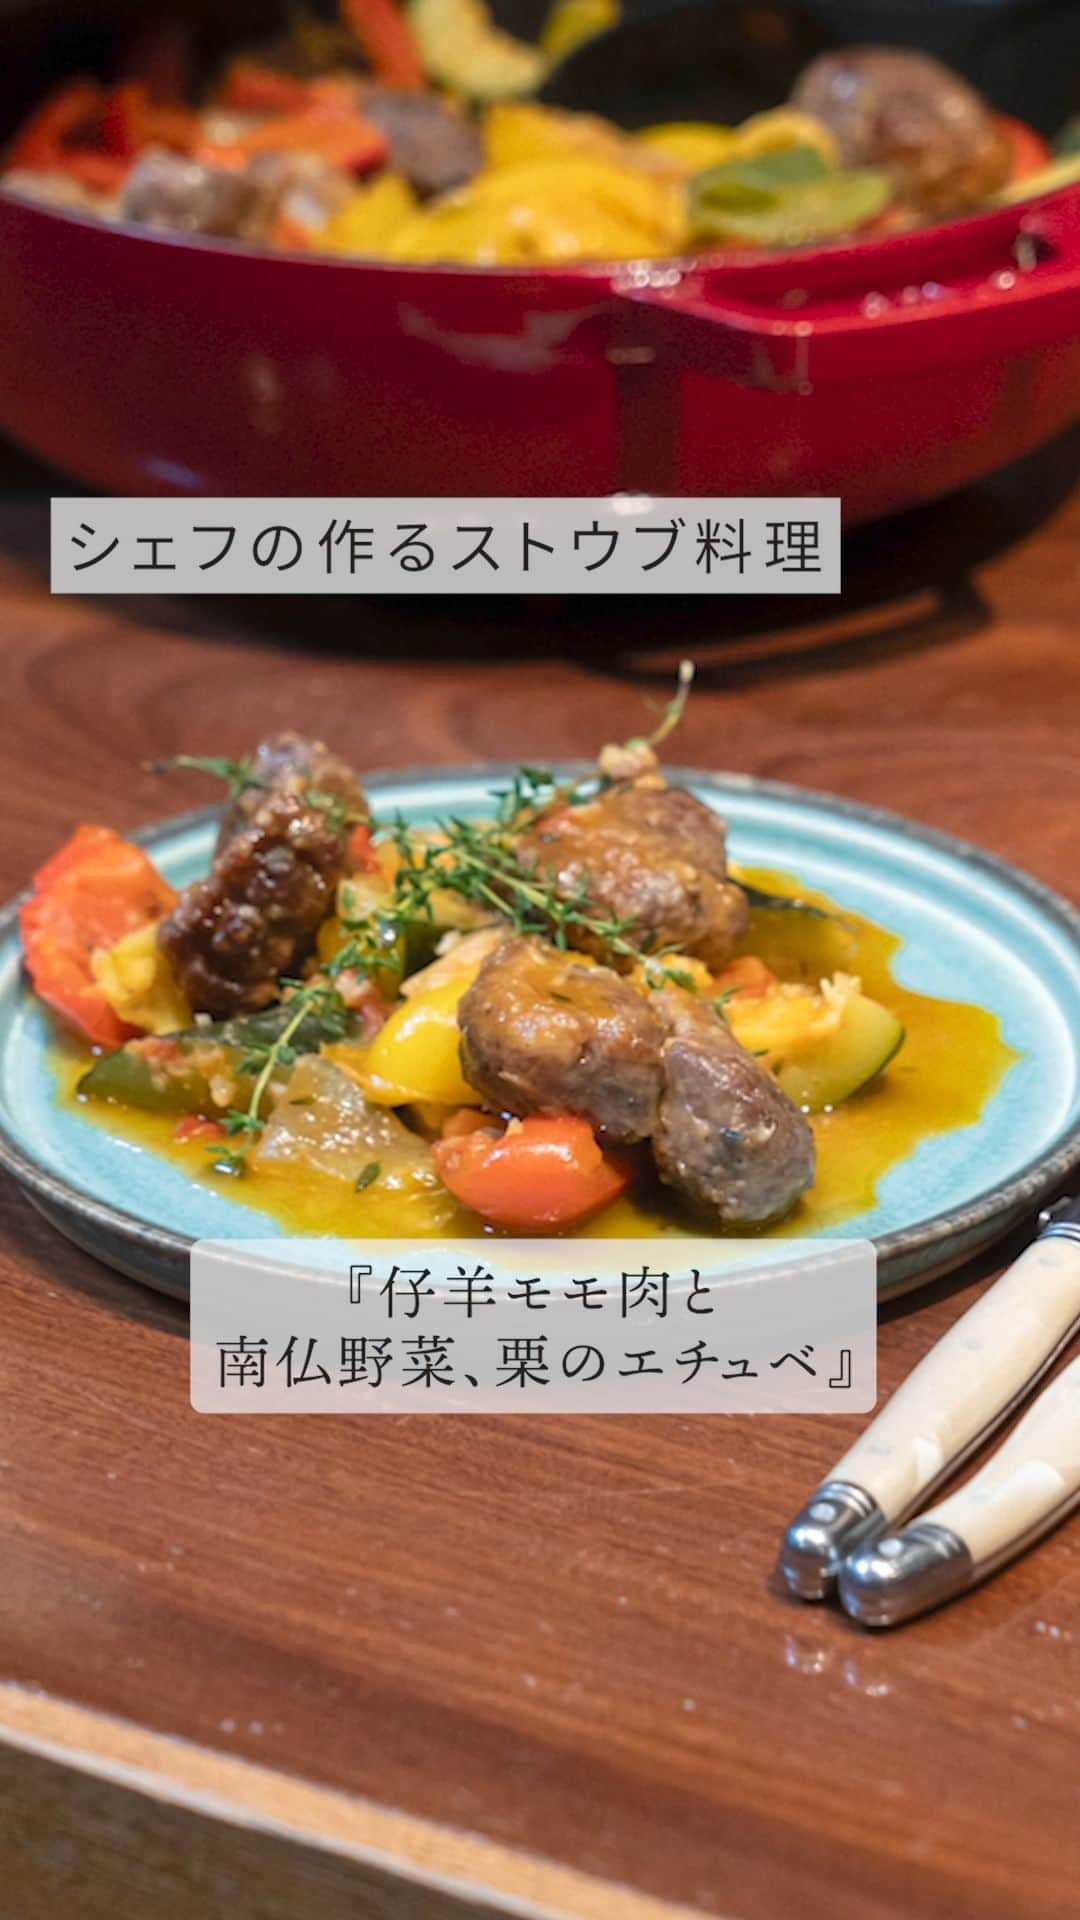 staub ストウブのインスタグラム：「【シェフの作るストウブ料理 : 仔羊モモ肉と南仏野菜、栗のエチュベ】  ストウブを使ったプロのスペシャリテを味わえるレストランをご紹介する「シェフの作るストウブ料理」。今回ご紹介するのは、東京 西麻布「Ma Cuisine ( @macuisinenisiazabu)」が提供する「仔羊モモ肉と南仏野菜、栗のエチュベ」。   -美味しさのポイント  仔羊モモ肉を5㎝角にカットして塩、こしょうをし、冷蔵庫で一晩おき、うま味を凝縮させます。   栗は渋皮までむいて、塩ゆでしておきます。 パプリカとズッキーニは大きめの乱切り、玉ねぎとトマトは1〜2㎝角に切ります。   ブレイザー・ソテーパンに少量のオリーブオイルを引いて中火で熱し、強力粉をまぶした仔羊モモ肉を入れます。焼き色がついたら返し、側面も同様に焼いて、全面がカリッとしたら取り出します。   いったん火を止め、鍋の中の脂が多すぎるようであればキッチンペーパーで軽くふき取り、にんにくを入れます。余熱でしばらく炒め、焼ける音が弱くなったら再び火をつけて炒めます。    にんにくの香りが出て適度に焼き色がついたら、玉ねぎを加え、塩、こしょうを軽く振ります。パプリカ、ハーブ類、栗の順に加え、そのつど塩、こしょうを少しずつ振ります。具材が多く入ったので火を強め、トマトを加え、蓋をして加熱します。肉を野菜の中にもどし入れ、蓋をして火を弱めてさらに加熱します。   底から具材を返し混ぜ、味を見て塩でととのえ、オリーブオイルをひと回しし、火を止めて蓋をして蒸らせば完成です。   -ストウブの気に入っているポイント  料理名の「エチュべ」とは、素材の水分を生かして蒸し煮にするフランス料理の手法。ブイヨンや白ワインなどを加えることなく、塩だけで味を引き出します。とてもシンプルな料理ですが、だからこそ、美味しく仕上げるには鍋選びが重要なのです。ストウブは熱伝導が良く、密閉度が高く、鍋の中で水分がきれいに対流するので、エチュべに最適。南仏料理の「ラタトゥイユ」などを作るとよくわかります。保温性も高いので、最後は火を止めて蓋をしたまま余熱で仕上げると、美味しさの面だけでなく省エネにもなりますよね。   今回の料理は、その派生形で、南仏野菜と相性抜群の仔羊肉を合わせ、旬の栗もプラスしました。鍋はココットでももちろんいいのですが、僕のおすすめはブレイザー・ソテーパン。特長は「炒めて煮る」という2ステップが一つの鍋でできること。最初に肉を焼き、鍋底についた肉のうま味や香りを野菜に吸わせます。口が広い浅型なので、たくさんの野菜を入れても均一に加熱でき、混ぜ返しもしやすい。28㎝のブレイザー・ソテーパンを何個か持っていて、色は僕の好きな赤色（チェリー）。艶めいて素敵でしょ? プレゼンテーションが映えるんですよ。   他にストウブは小振りのココット、ベーキングパン、テリーヌなどを持っています。機能性とデザイン性を併せ持っているのが魅力ですね。   -レストラン情報  池尻綾介氏は神奈川県出身。「ラ・ピッチョリー・ドゥ・ルル」「白金シェ・トモ」のシェフを務め、2010年に渡仏。ブルゴーニュやシャンパーニュ地方の店で経験を積み、帰国後「レストランひらまつ本店」「メゾン・ポール・ボキューズ」を経て、2019年に独立開業。六本木通りに面し、ビルの地下ながら天井が高く開放感がある店内。黒板に書かれたア・ラ・カルトの料理はフロマージュ・ド・テットやパテ・ド・カンパーニュなどワインが進むシャルキュトリが豊富。加えて鳴門レンコンの厚切りローストや金時豚の各種料理など徳島の生産者より仕入れた食材で作る料理もおすすめ。   -住所 & TEL  〒106-0031 東京都港区西麻布1-2-14 デュオ・スカーラ西麻布WEST B1F  TEL 03-6455-4426   -URL  https://gh5b200.gorp.jp   #STAUB #ストウブ #西麻布 #西麻布グルメ #六本木 #六本木グルメ」